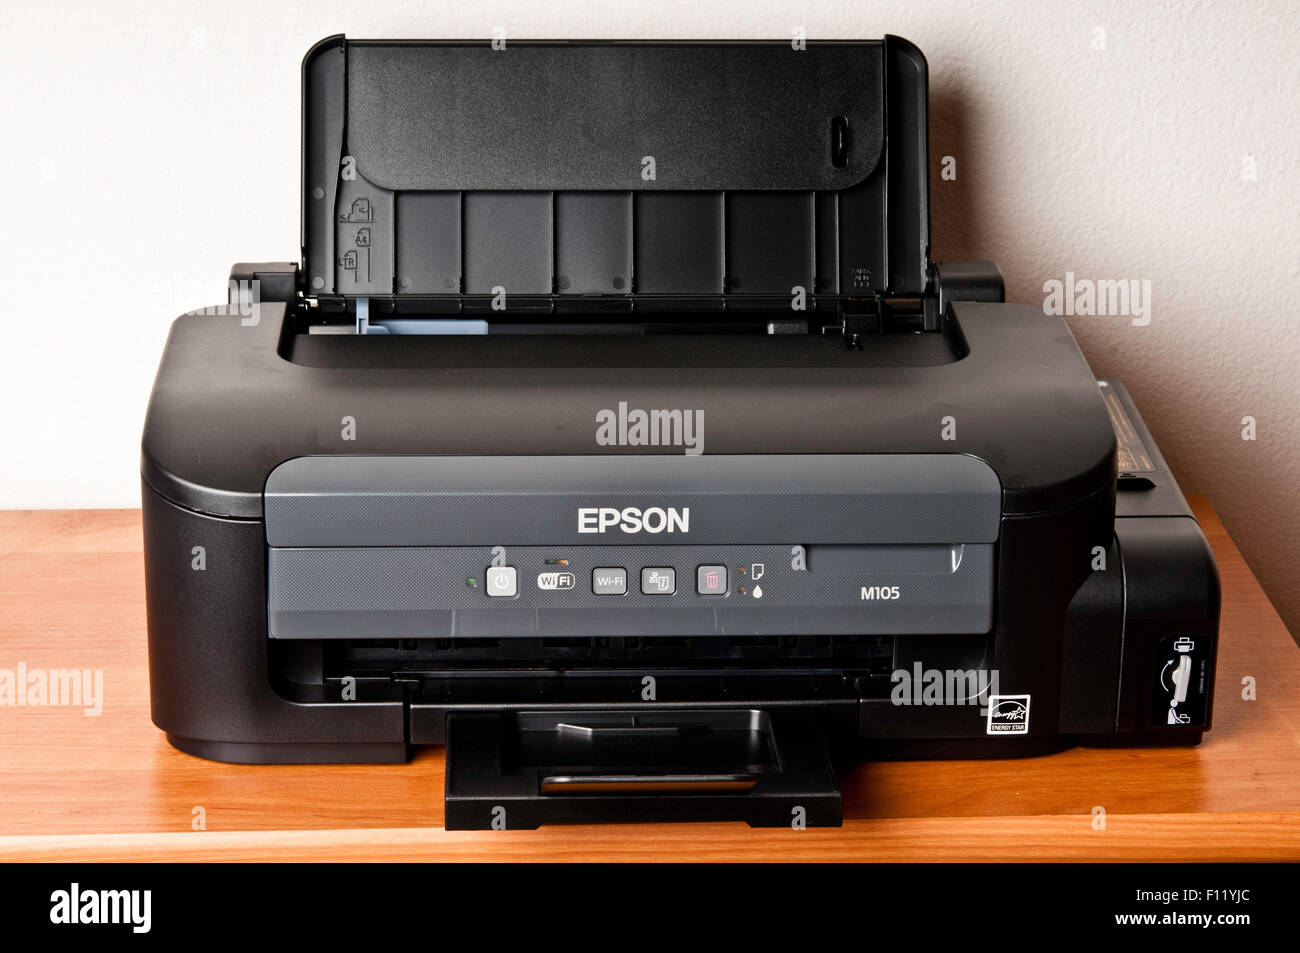 Epson M105 stampante monocromatica Foto stock - Alamy